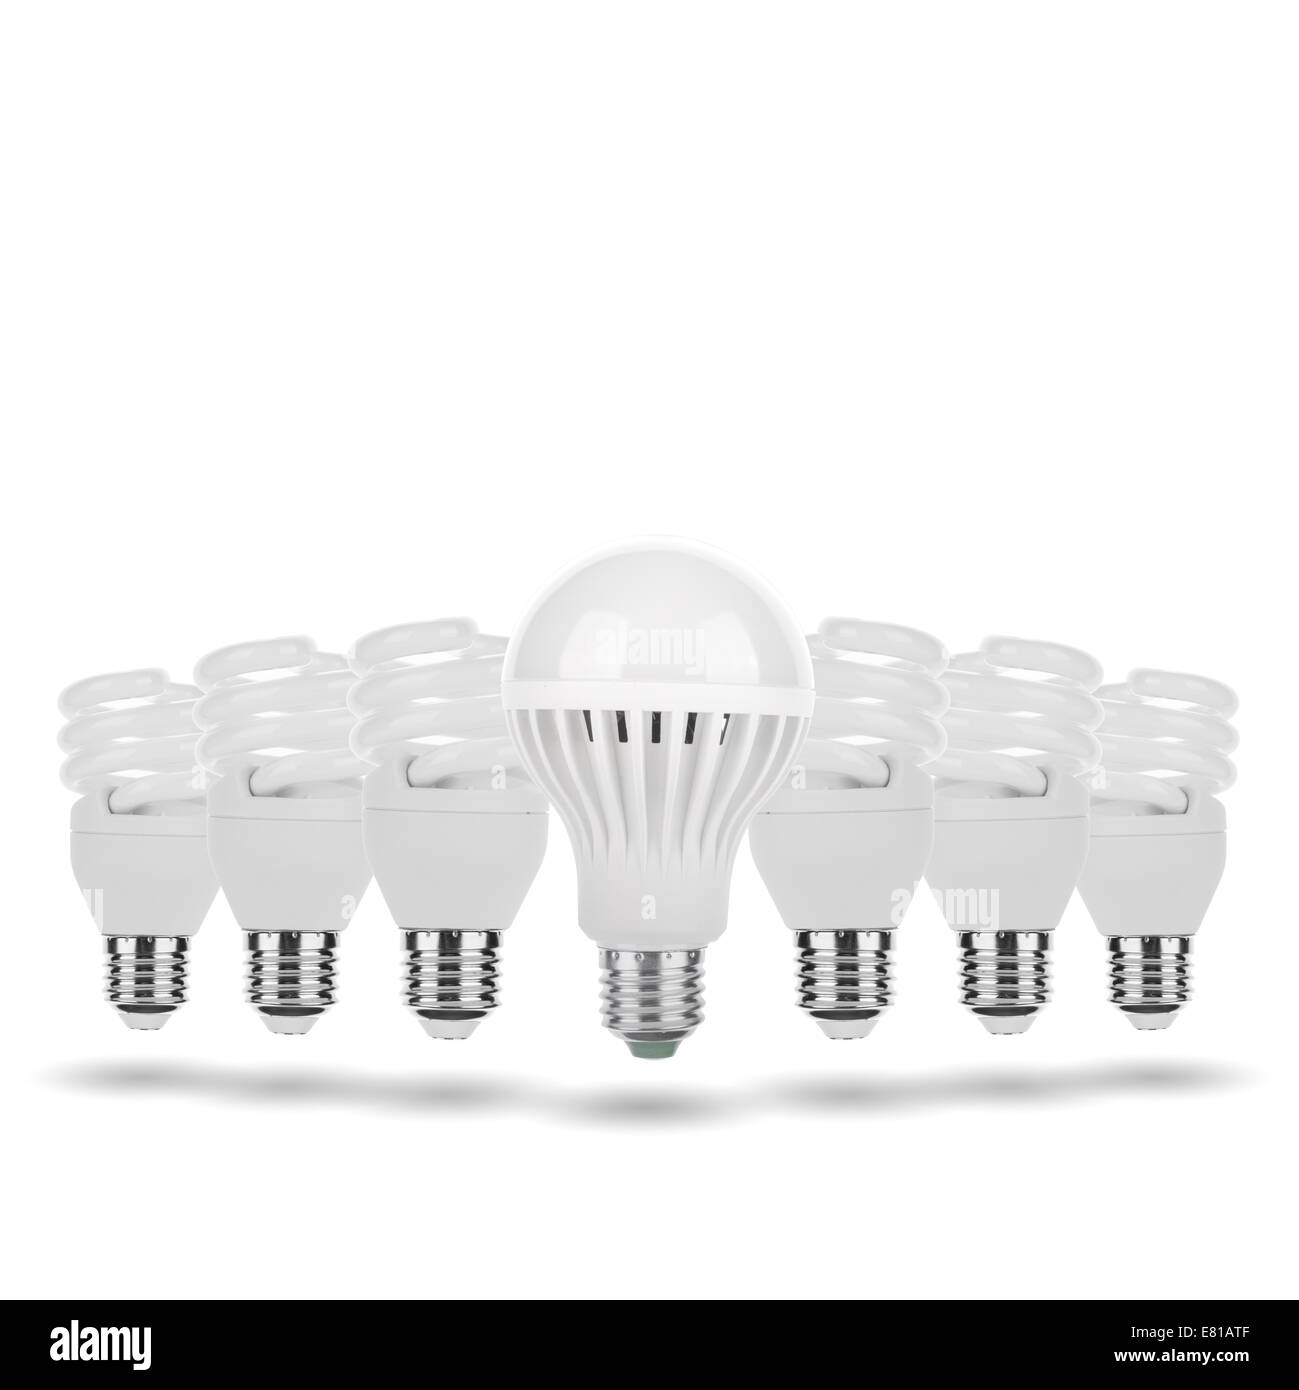 Evolution - LED-Birne, Leuchtstoffröhre, Wolfram-Lampe, Kerze Konzept Stockfoto